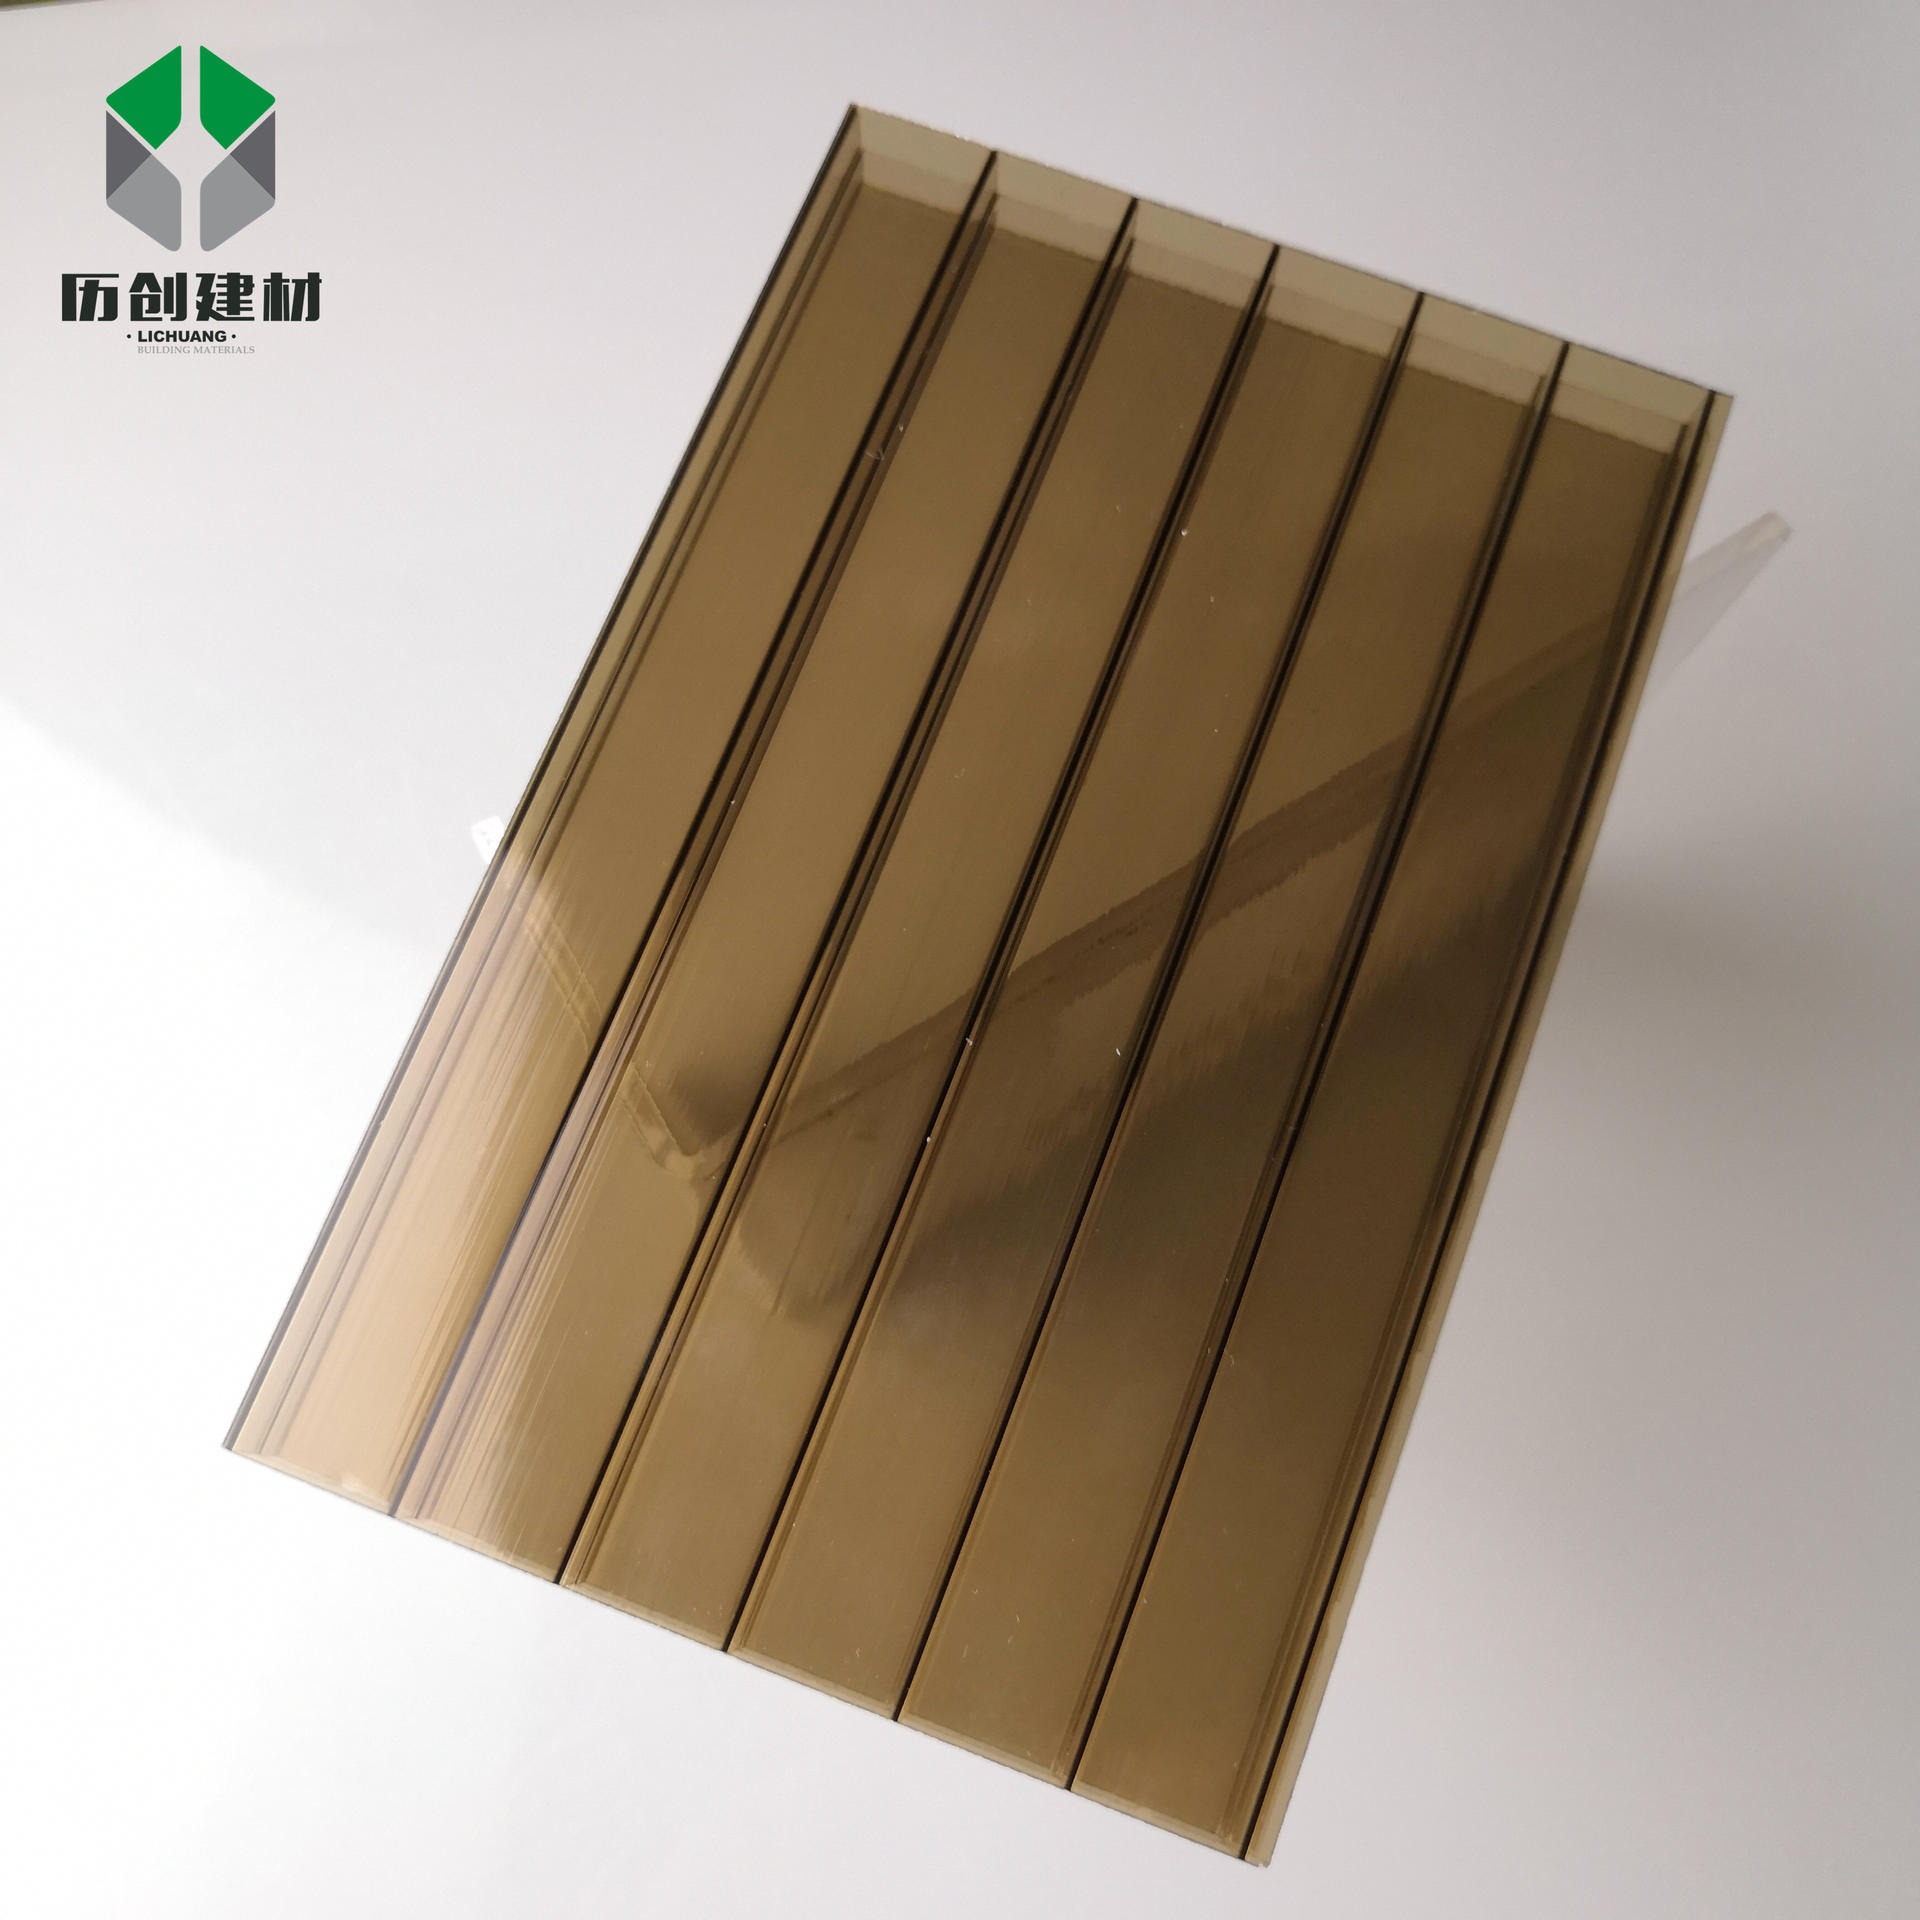 订制生产pc聚碳酸酯阳光板 10mm三层透明板材防腐蚀亮面塑料板广东厂家直供